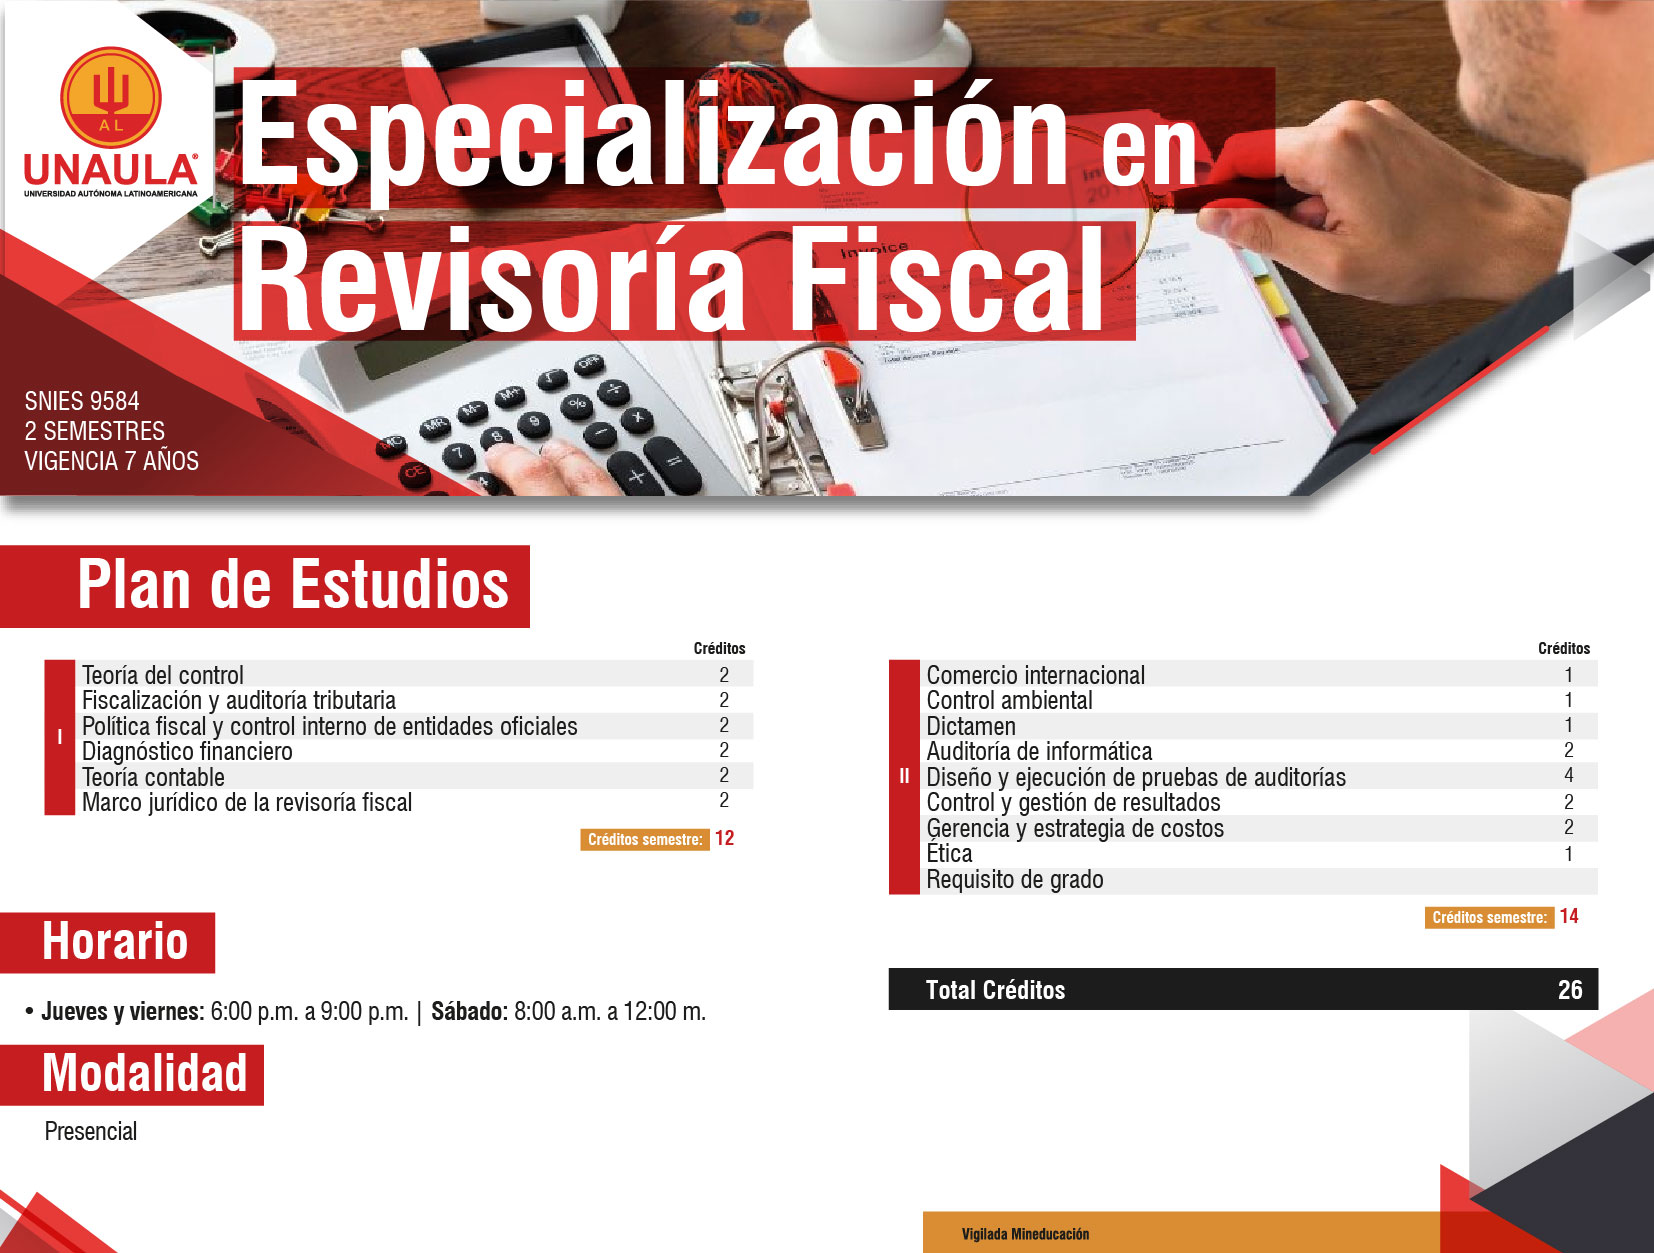  Revisoría Fiscal